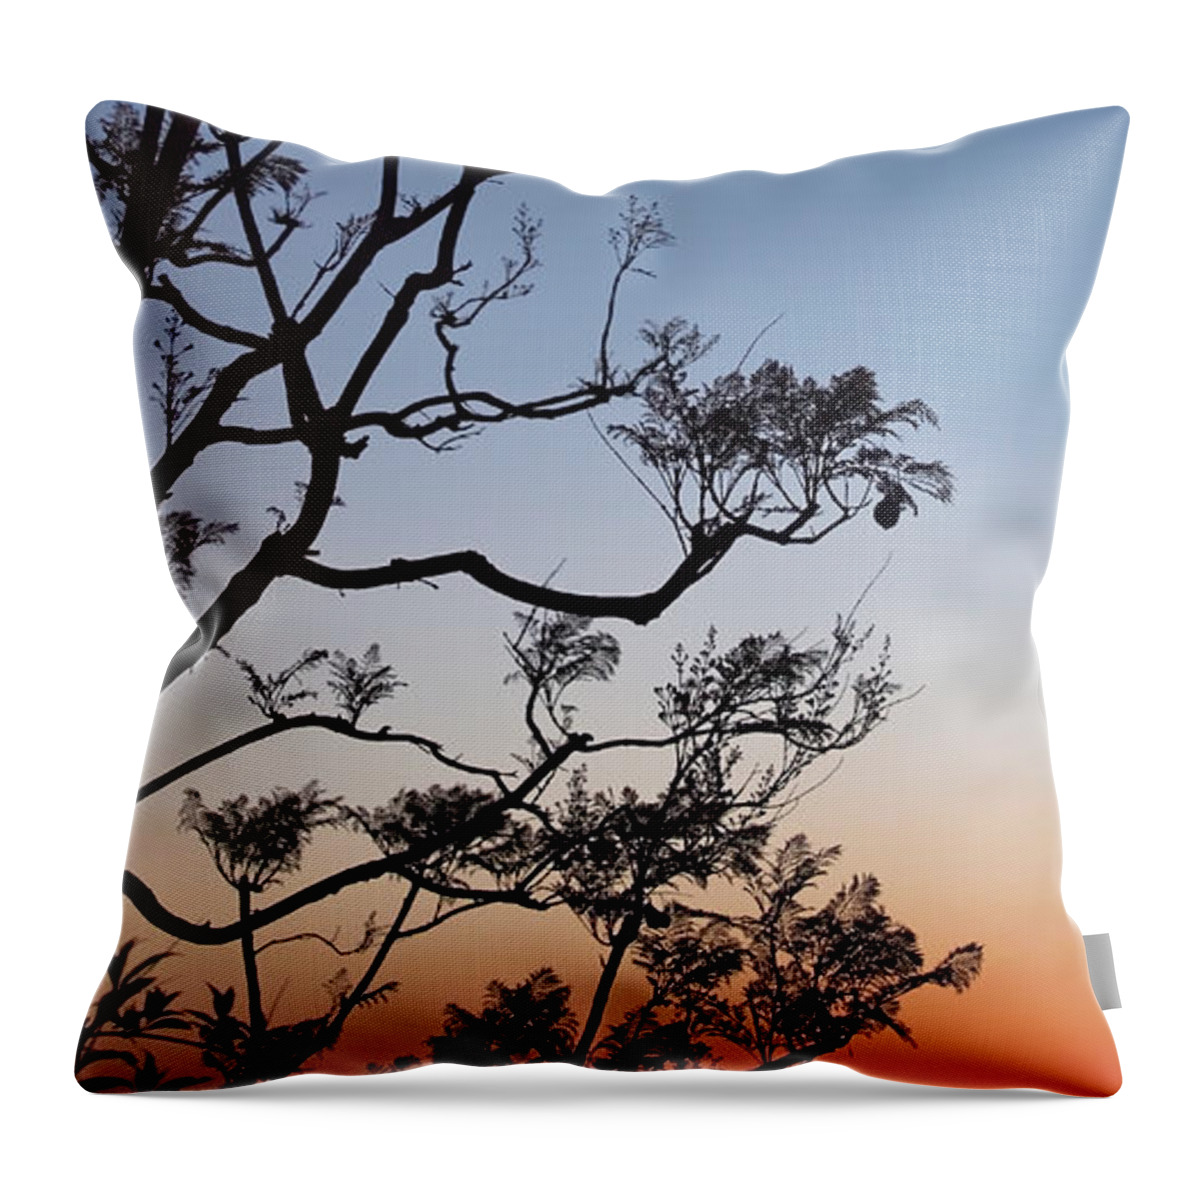 Jacarandas Throw Pillow featuring the photograph Jacaranda Sunset by Rona Black